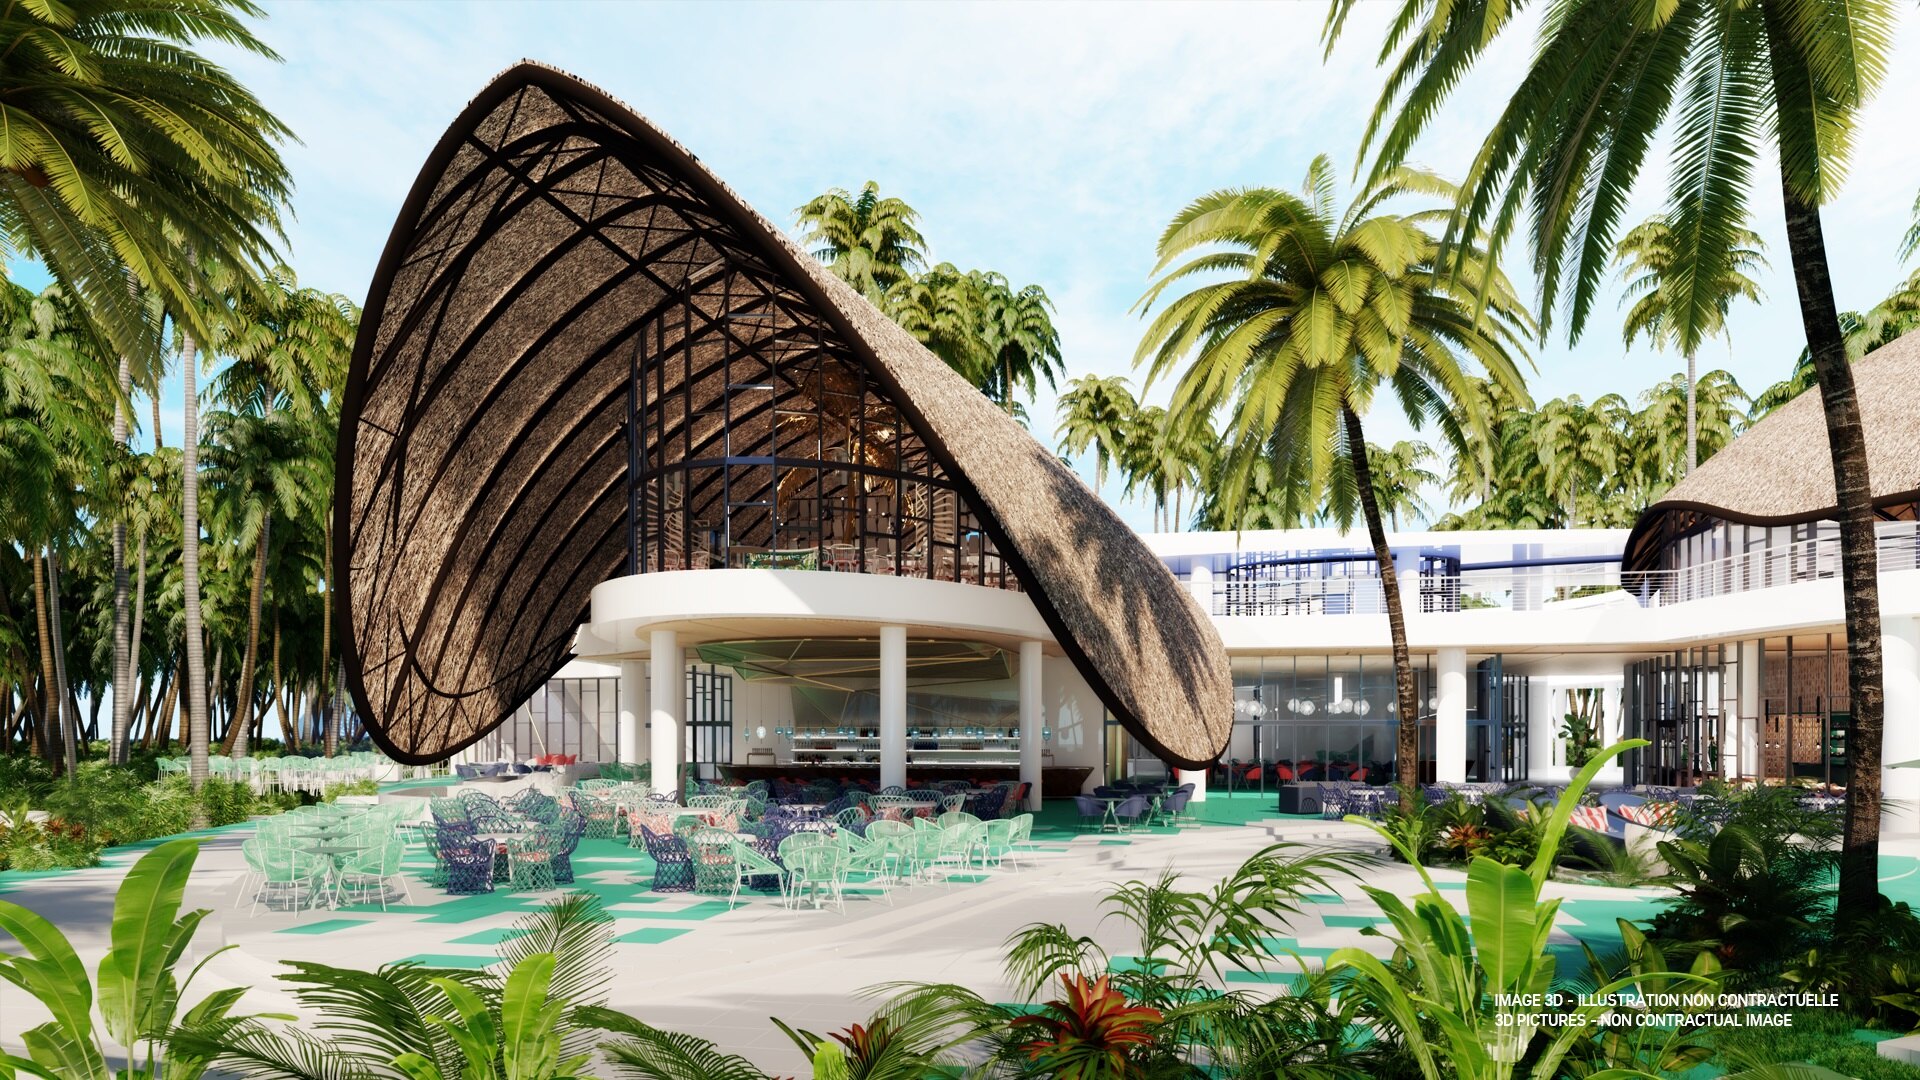 Prestigiosa cadena Club Med anuncia apertura nuevas instalaciones en Playa Esmeralda, Miches. RD.